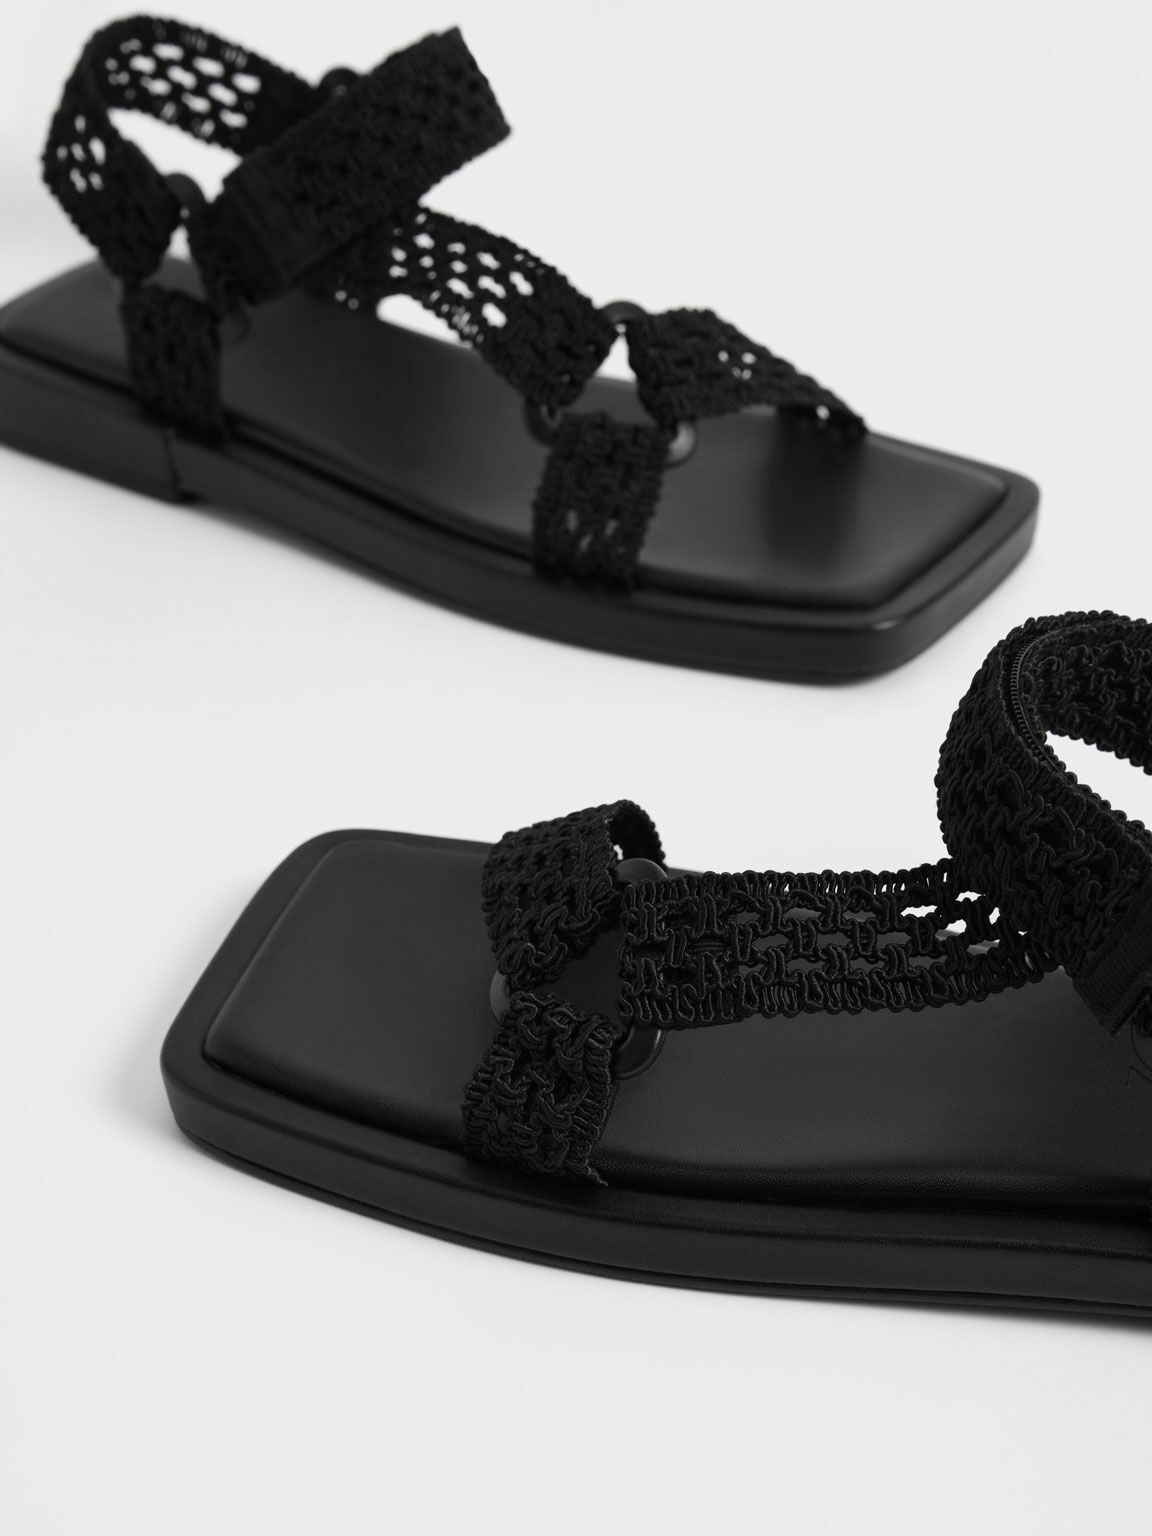 Vina Knitted Square-Toe Sandals, Black, hi-res